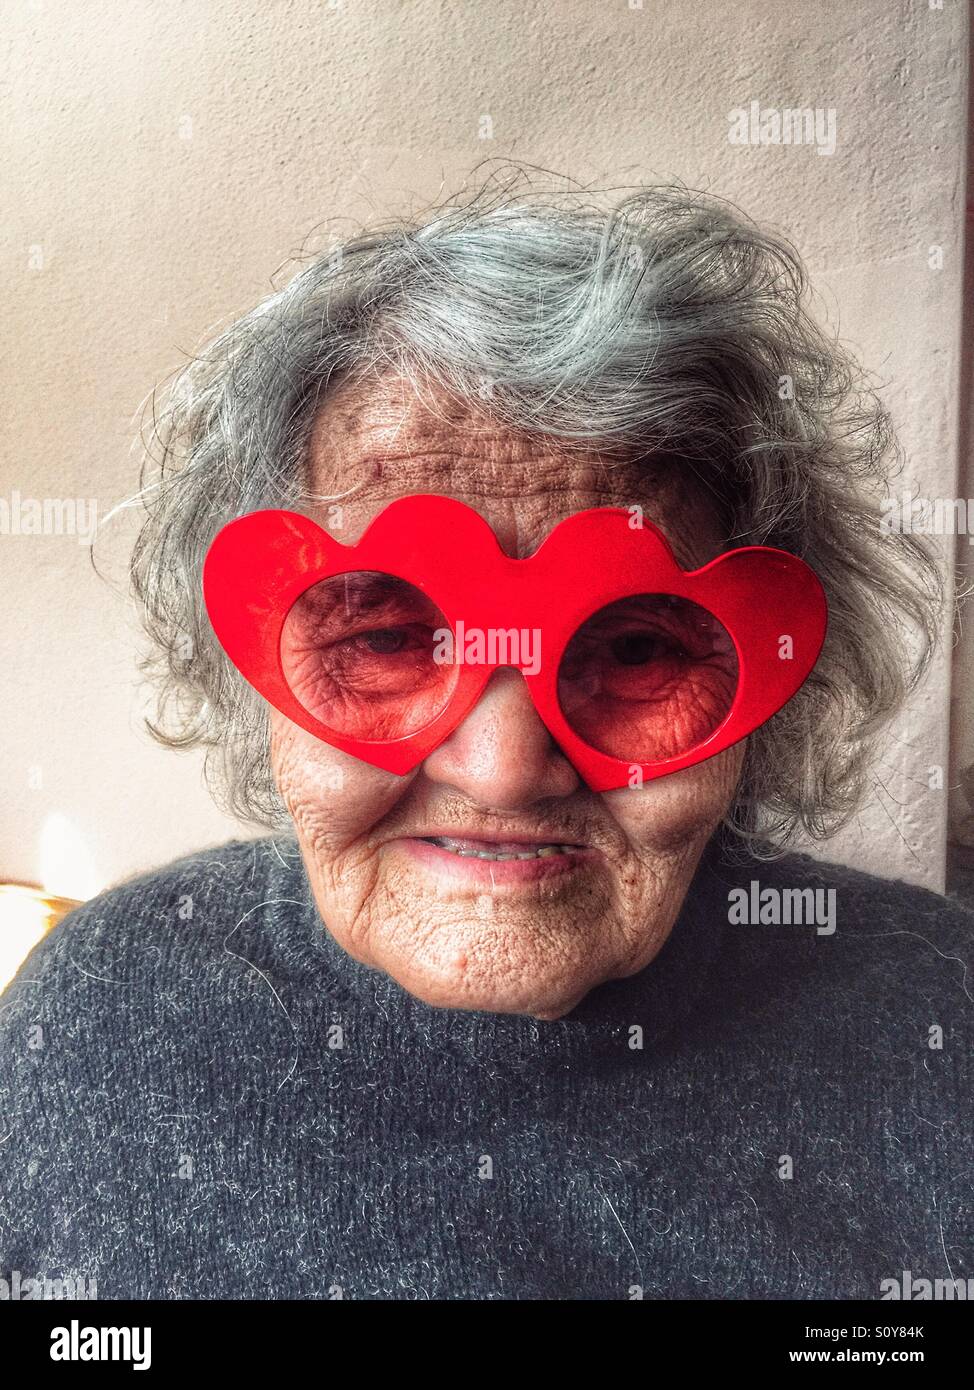 Funny granny Stock Photo